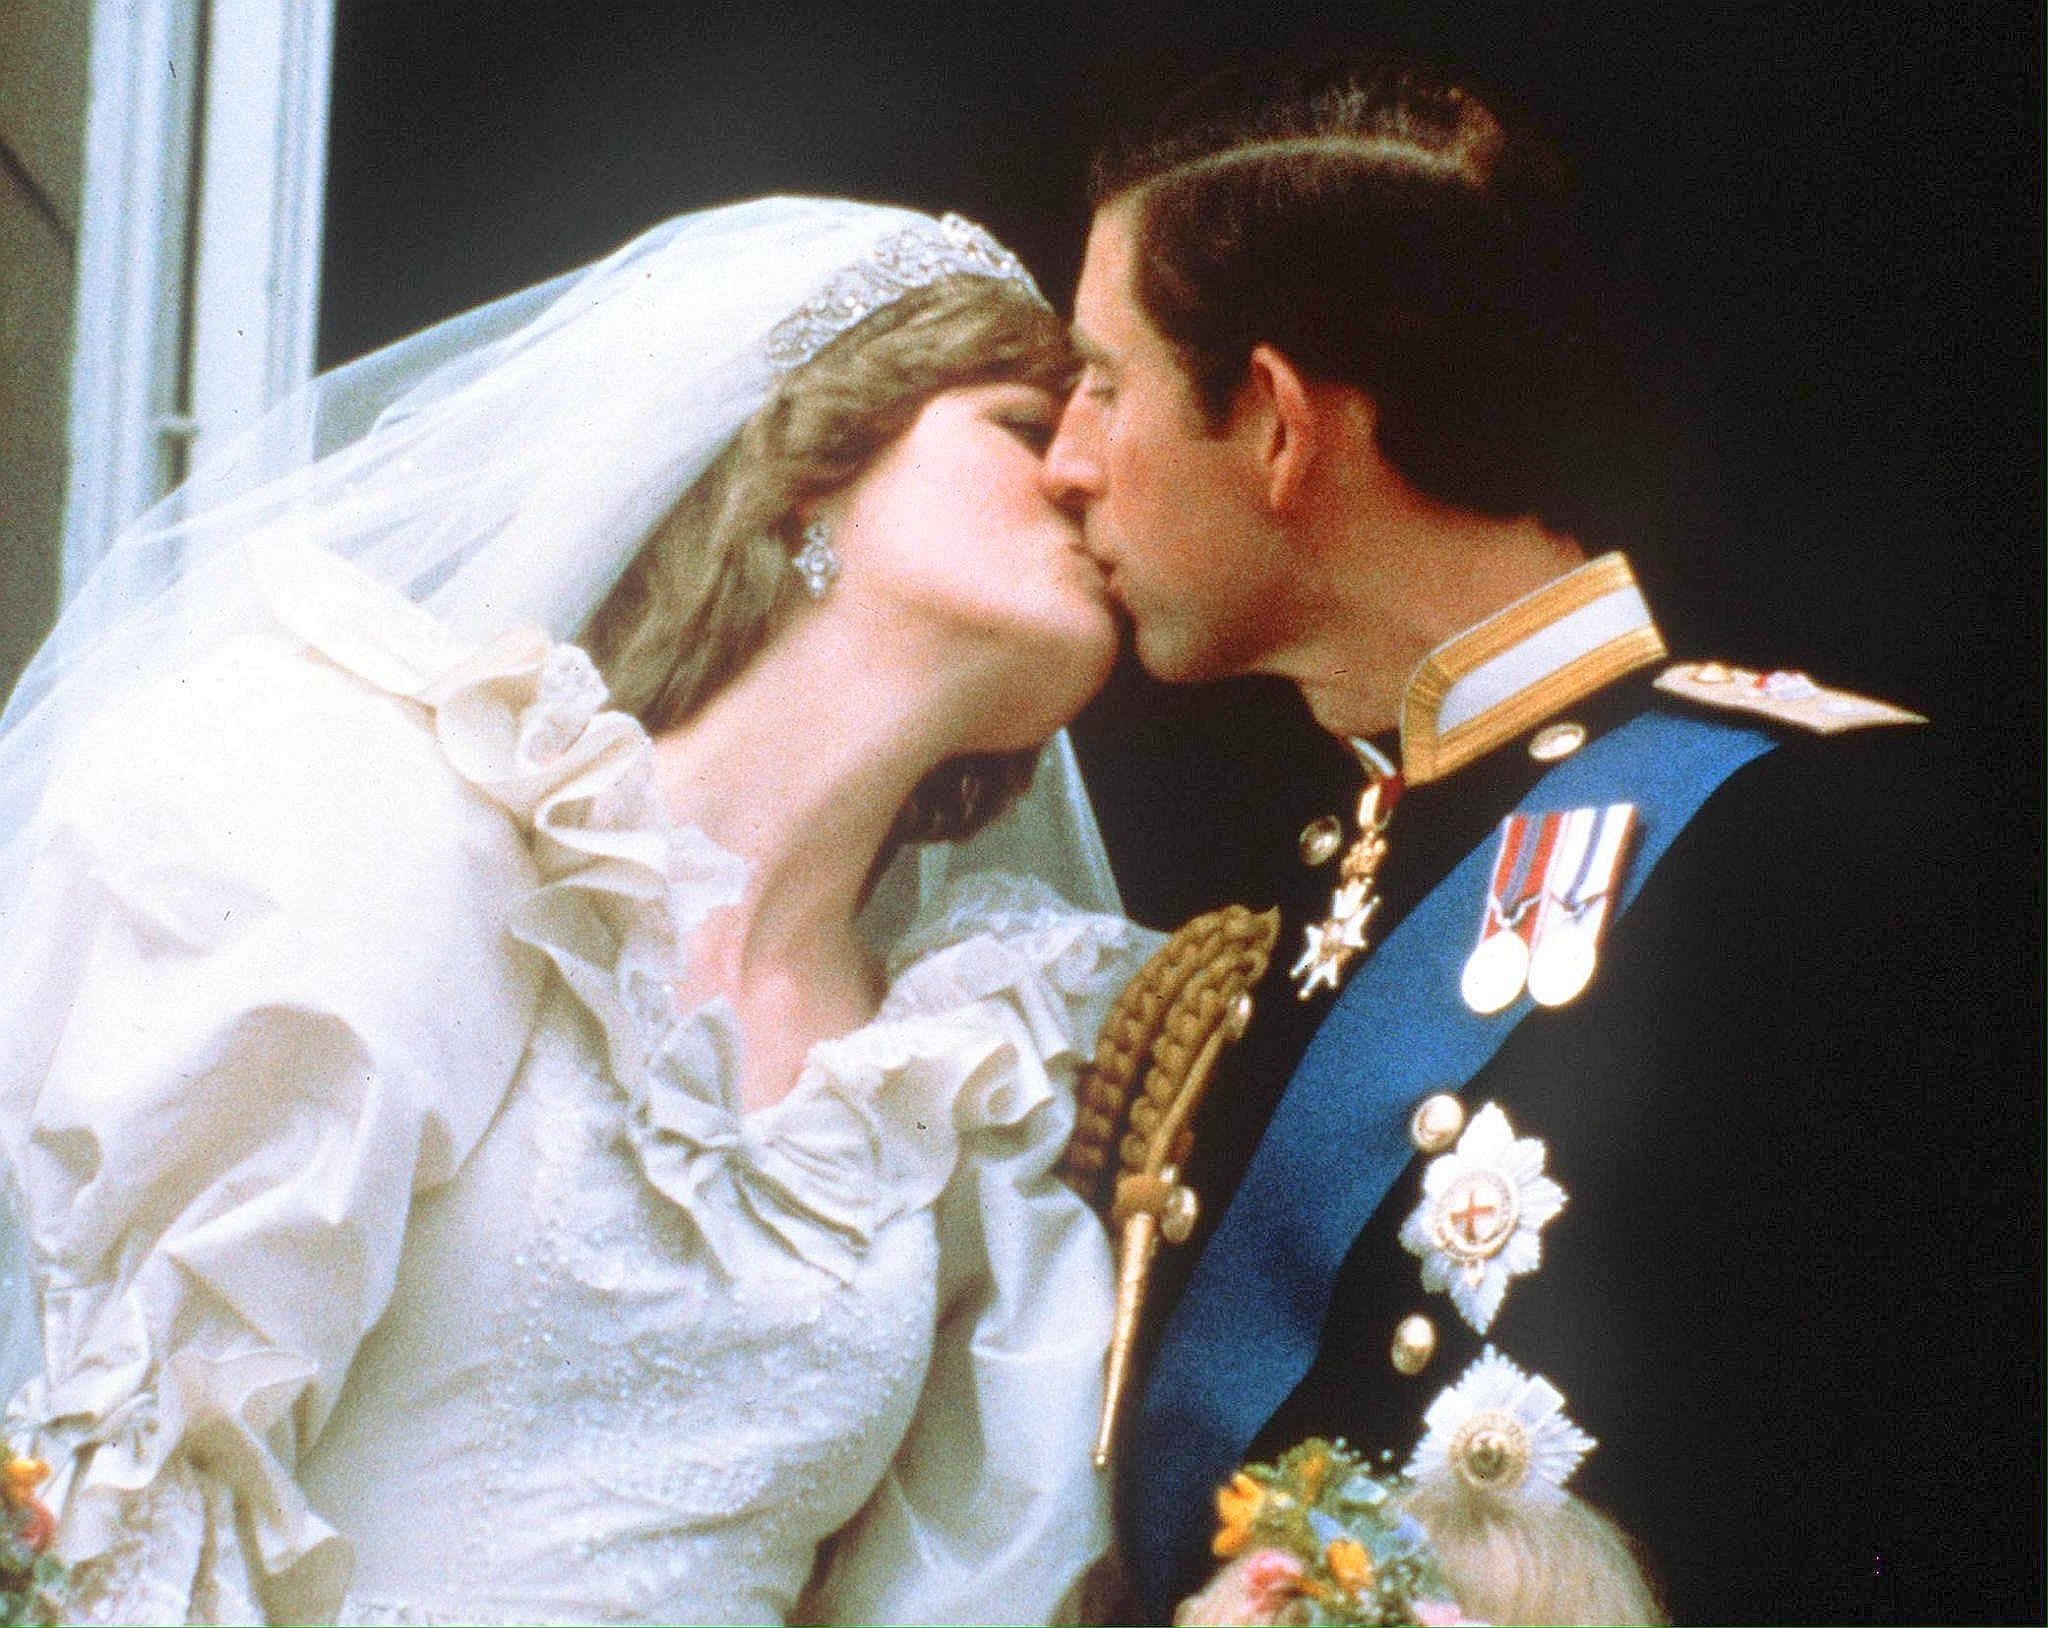 Die Mutter von Prinz William und Prinz Henry starb 1997 bei einem Autounfall in Paris.